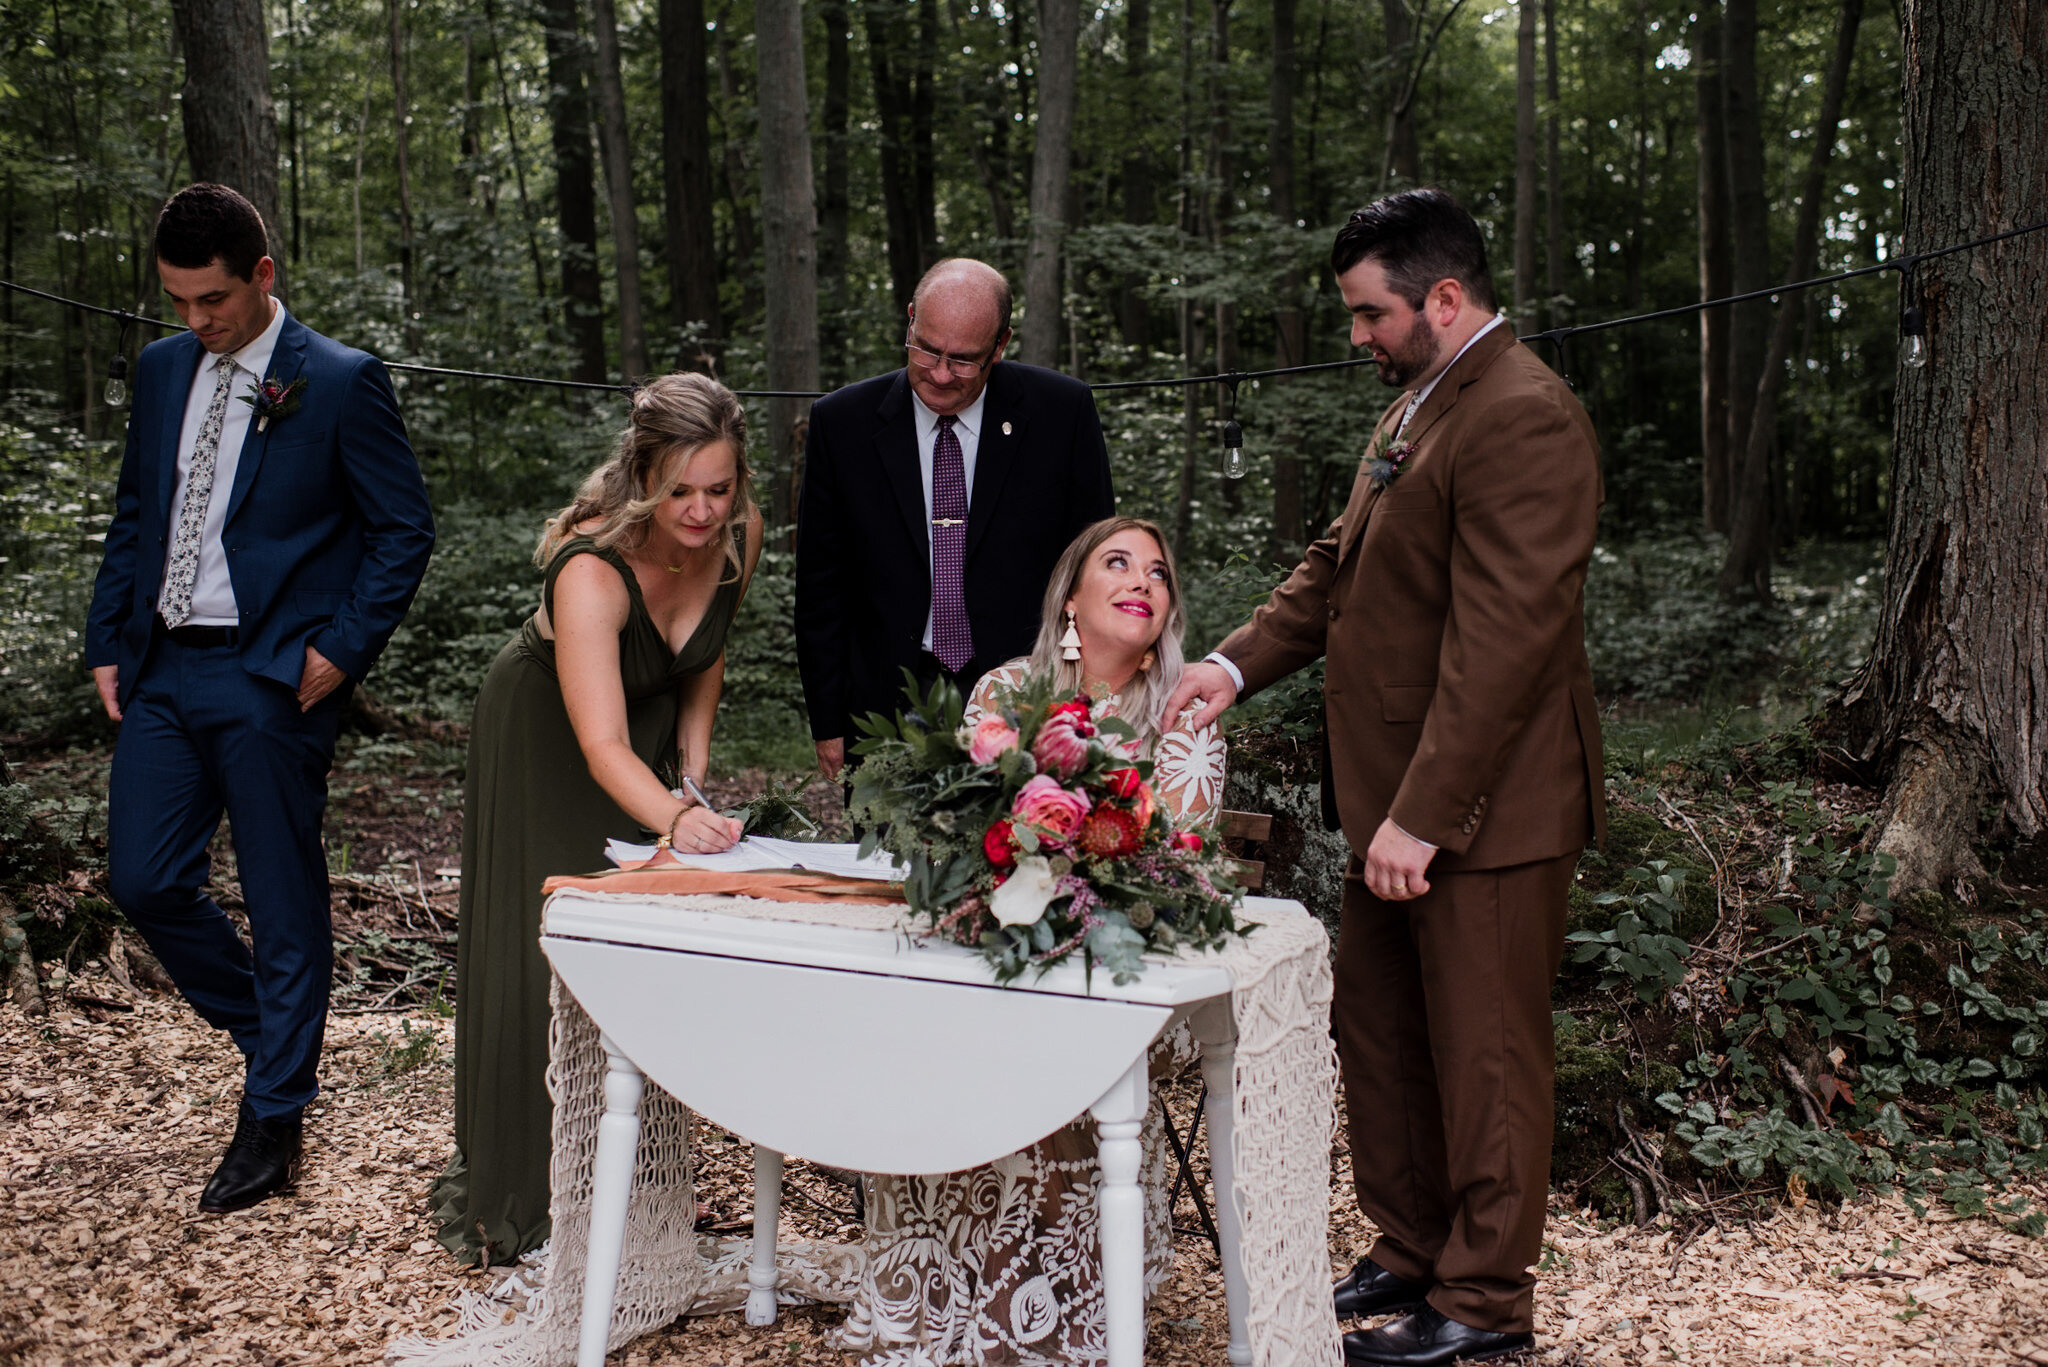 087-forest-wedding-ceremony-boho-bride-rue-de-seine-toronto-ontario-photographer.jpg